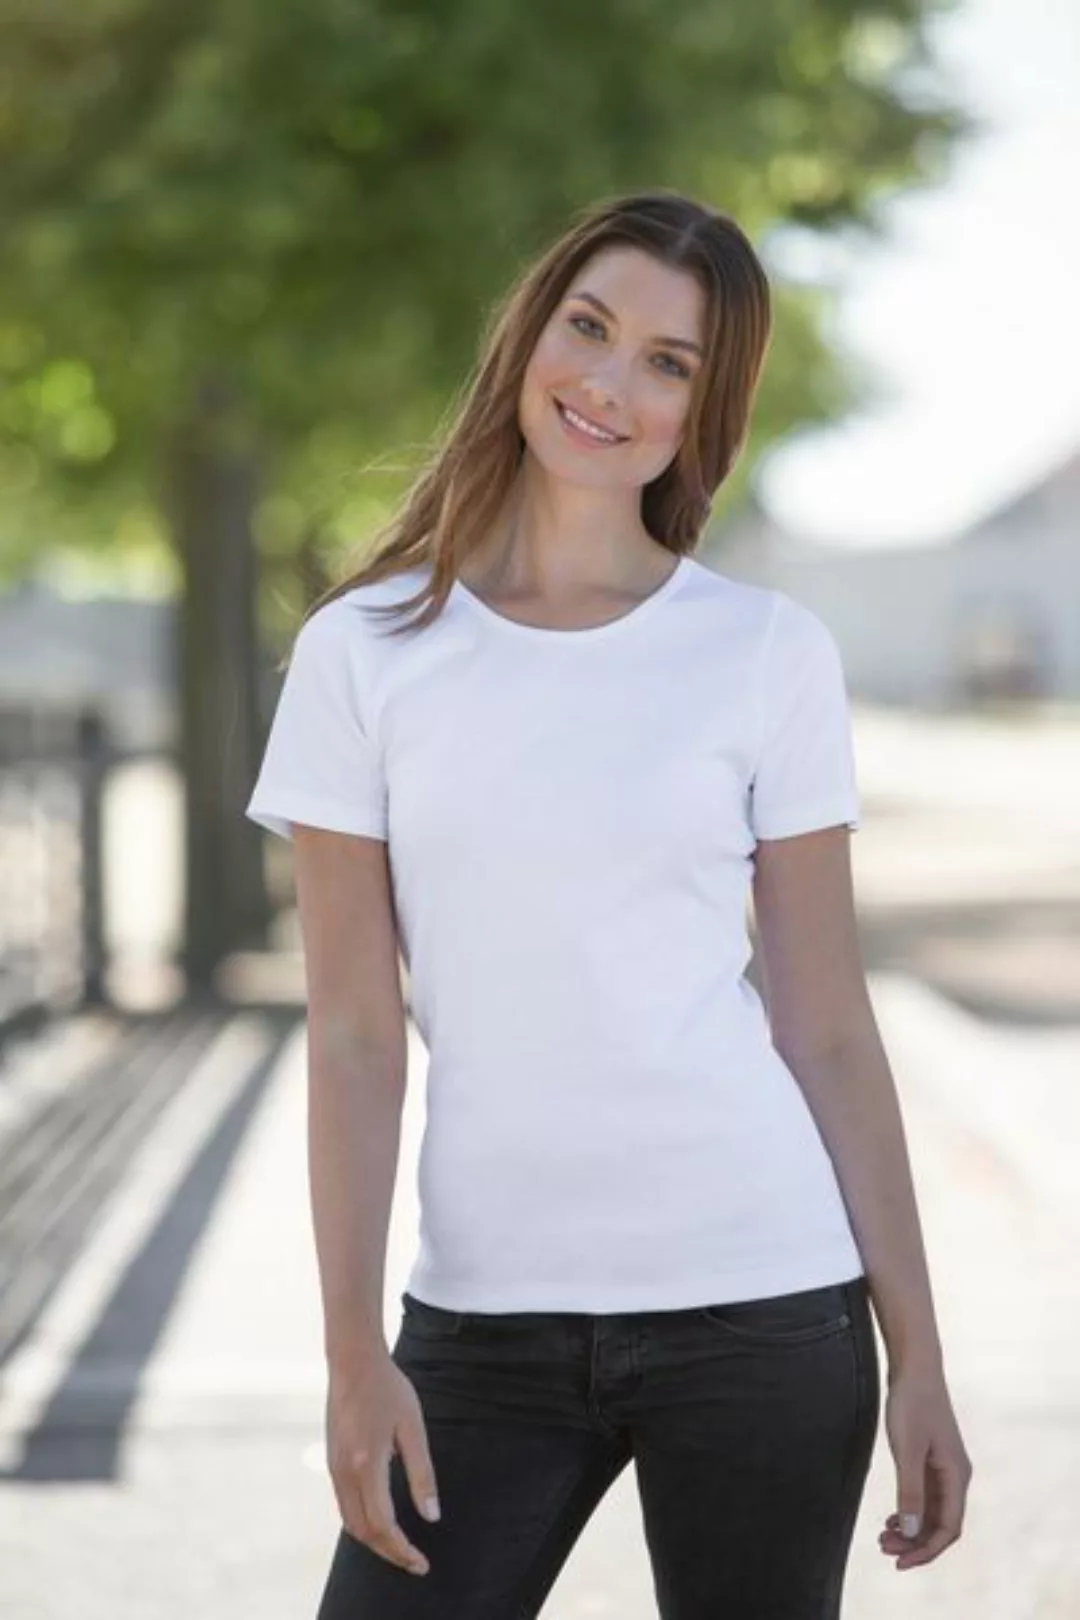 Damen T-shirt Von Neutral Bio Baumwolle Round Neck Interlock günstig online kaufen